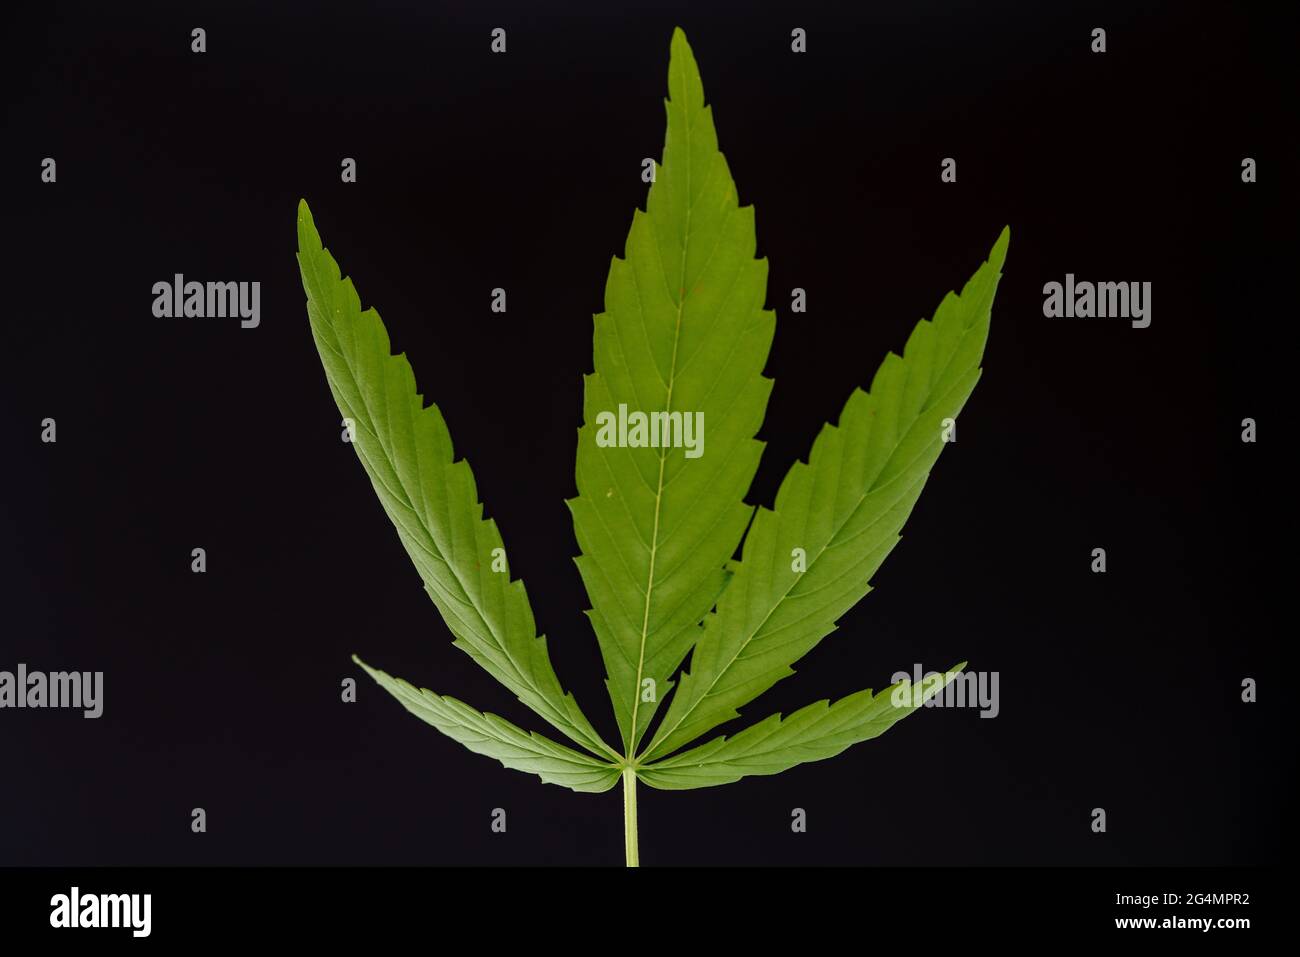 Marijuana leaf on black background Stock Photo